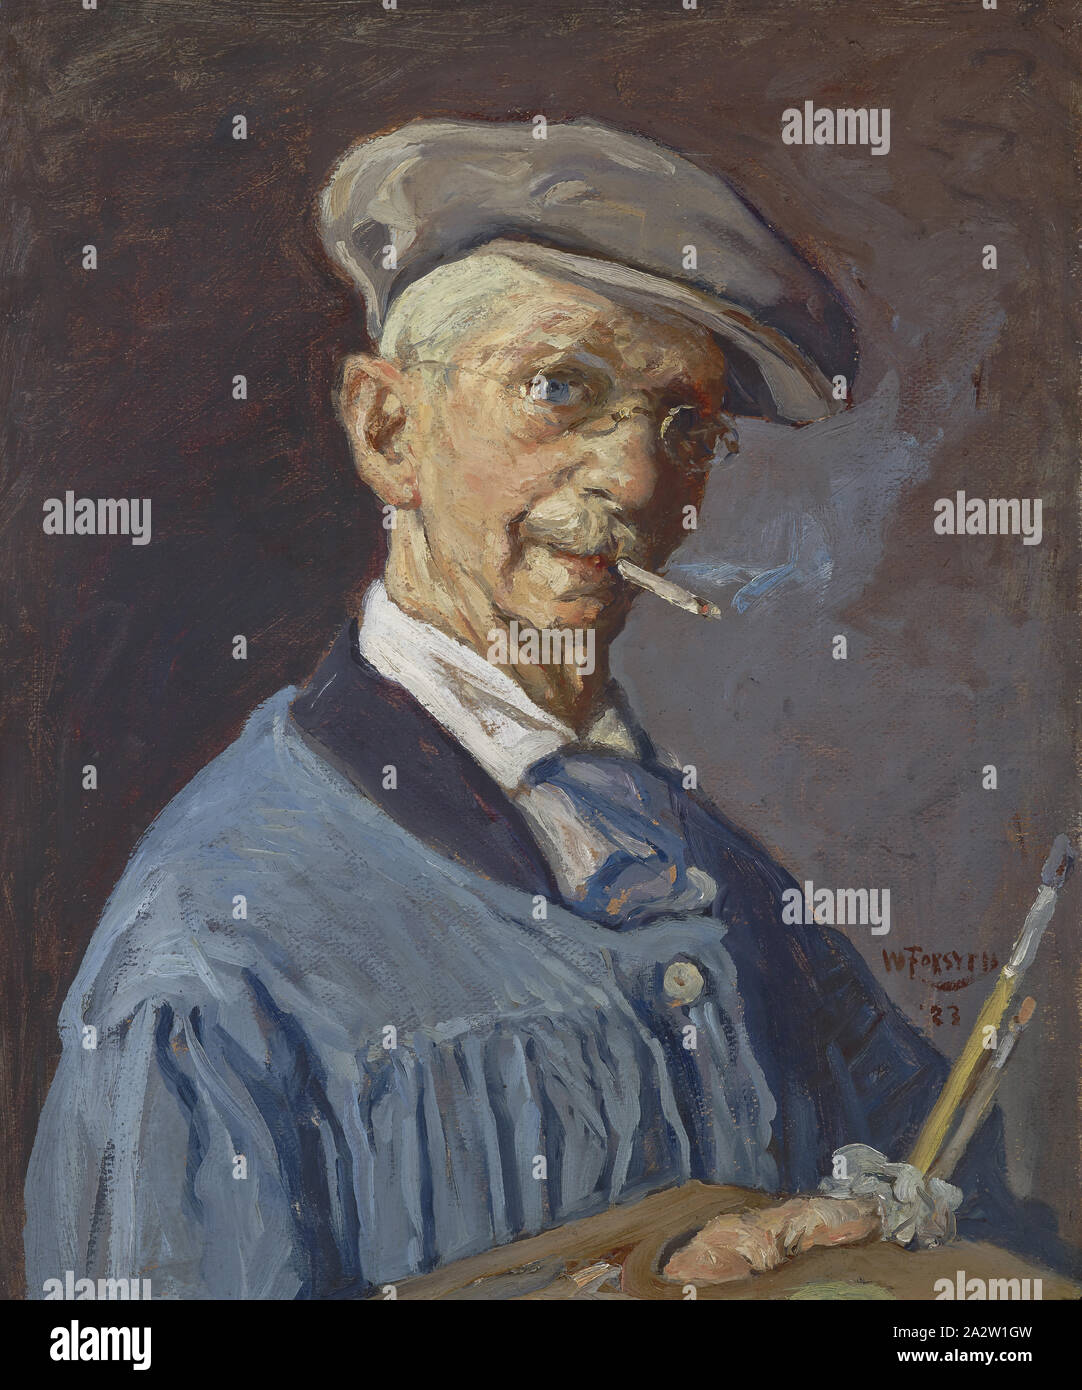 Le peintre l'homme, William J. Forsyth (Américain, 1854-1935), 1923, huile  sur toile, 23-3/